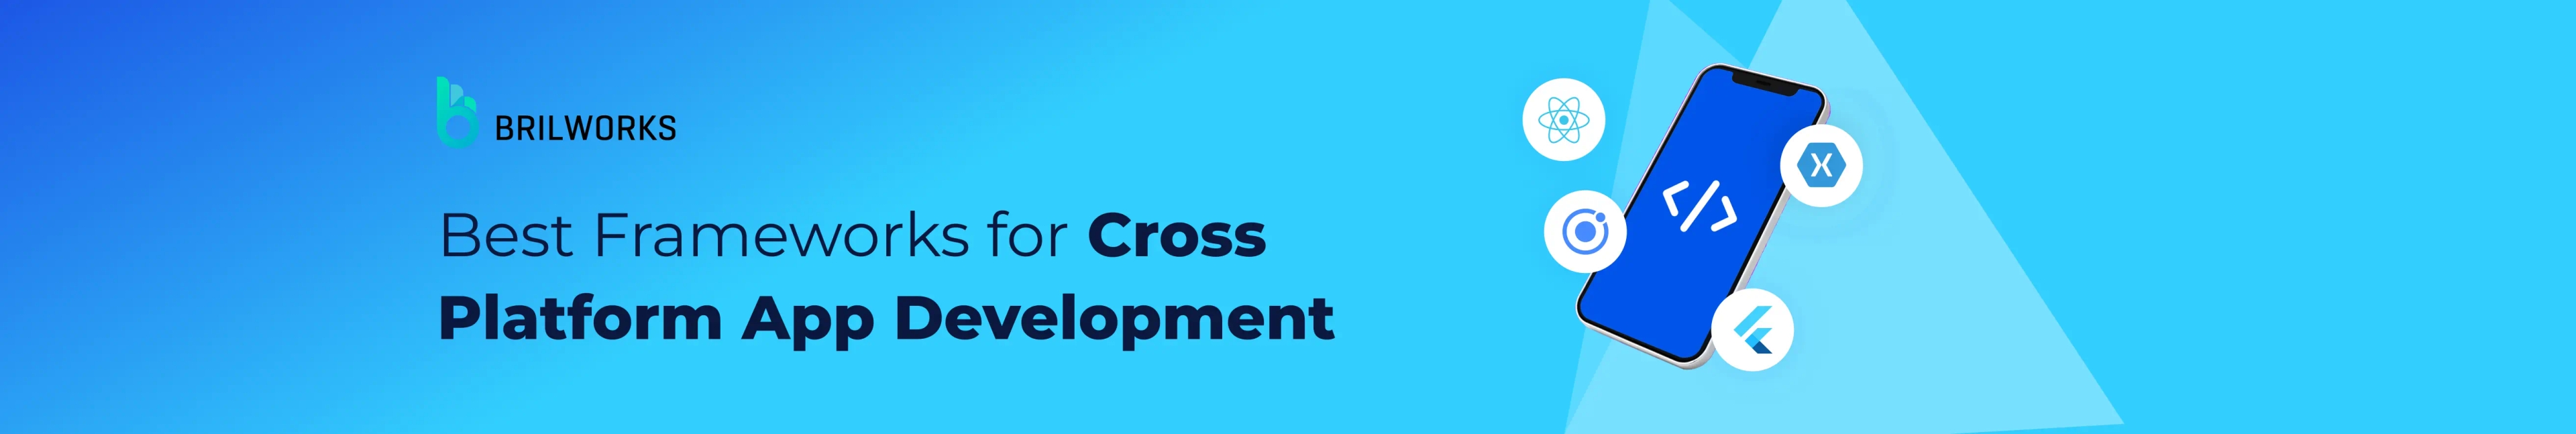 Banner_Cross platform app development